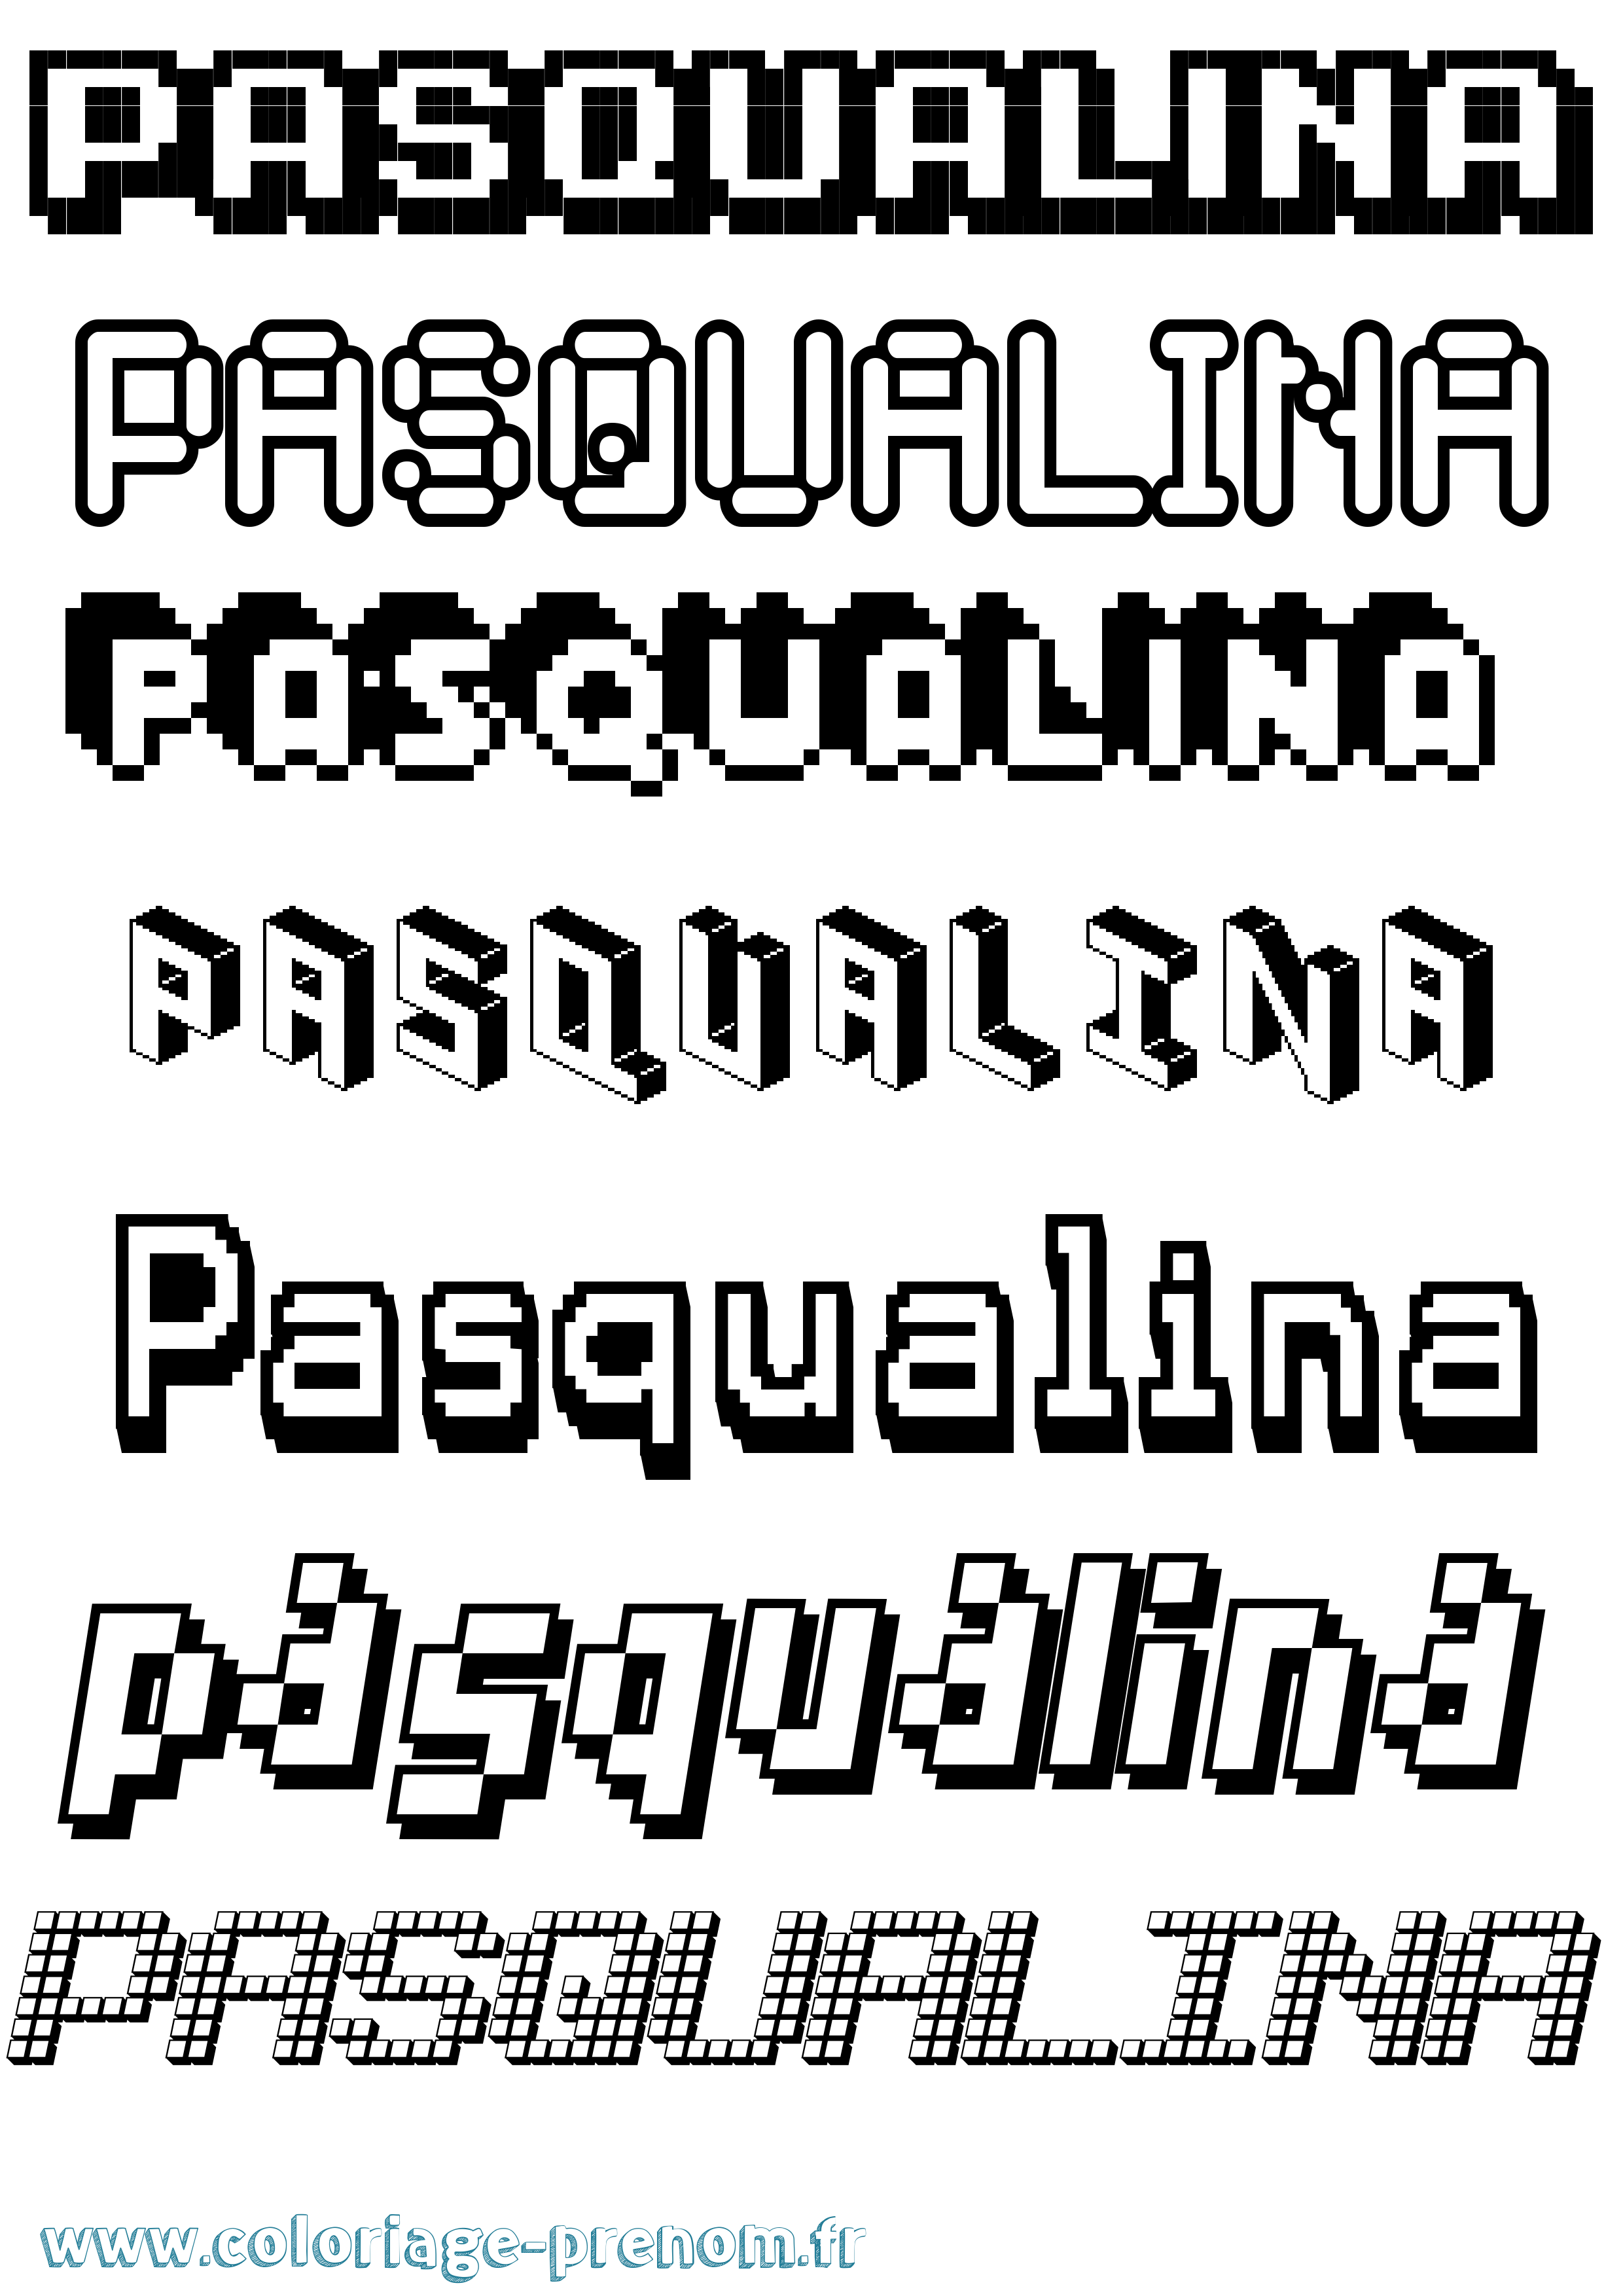 Coloriage prénom Pasqualina Pixel